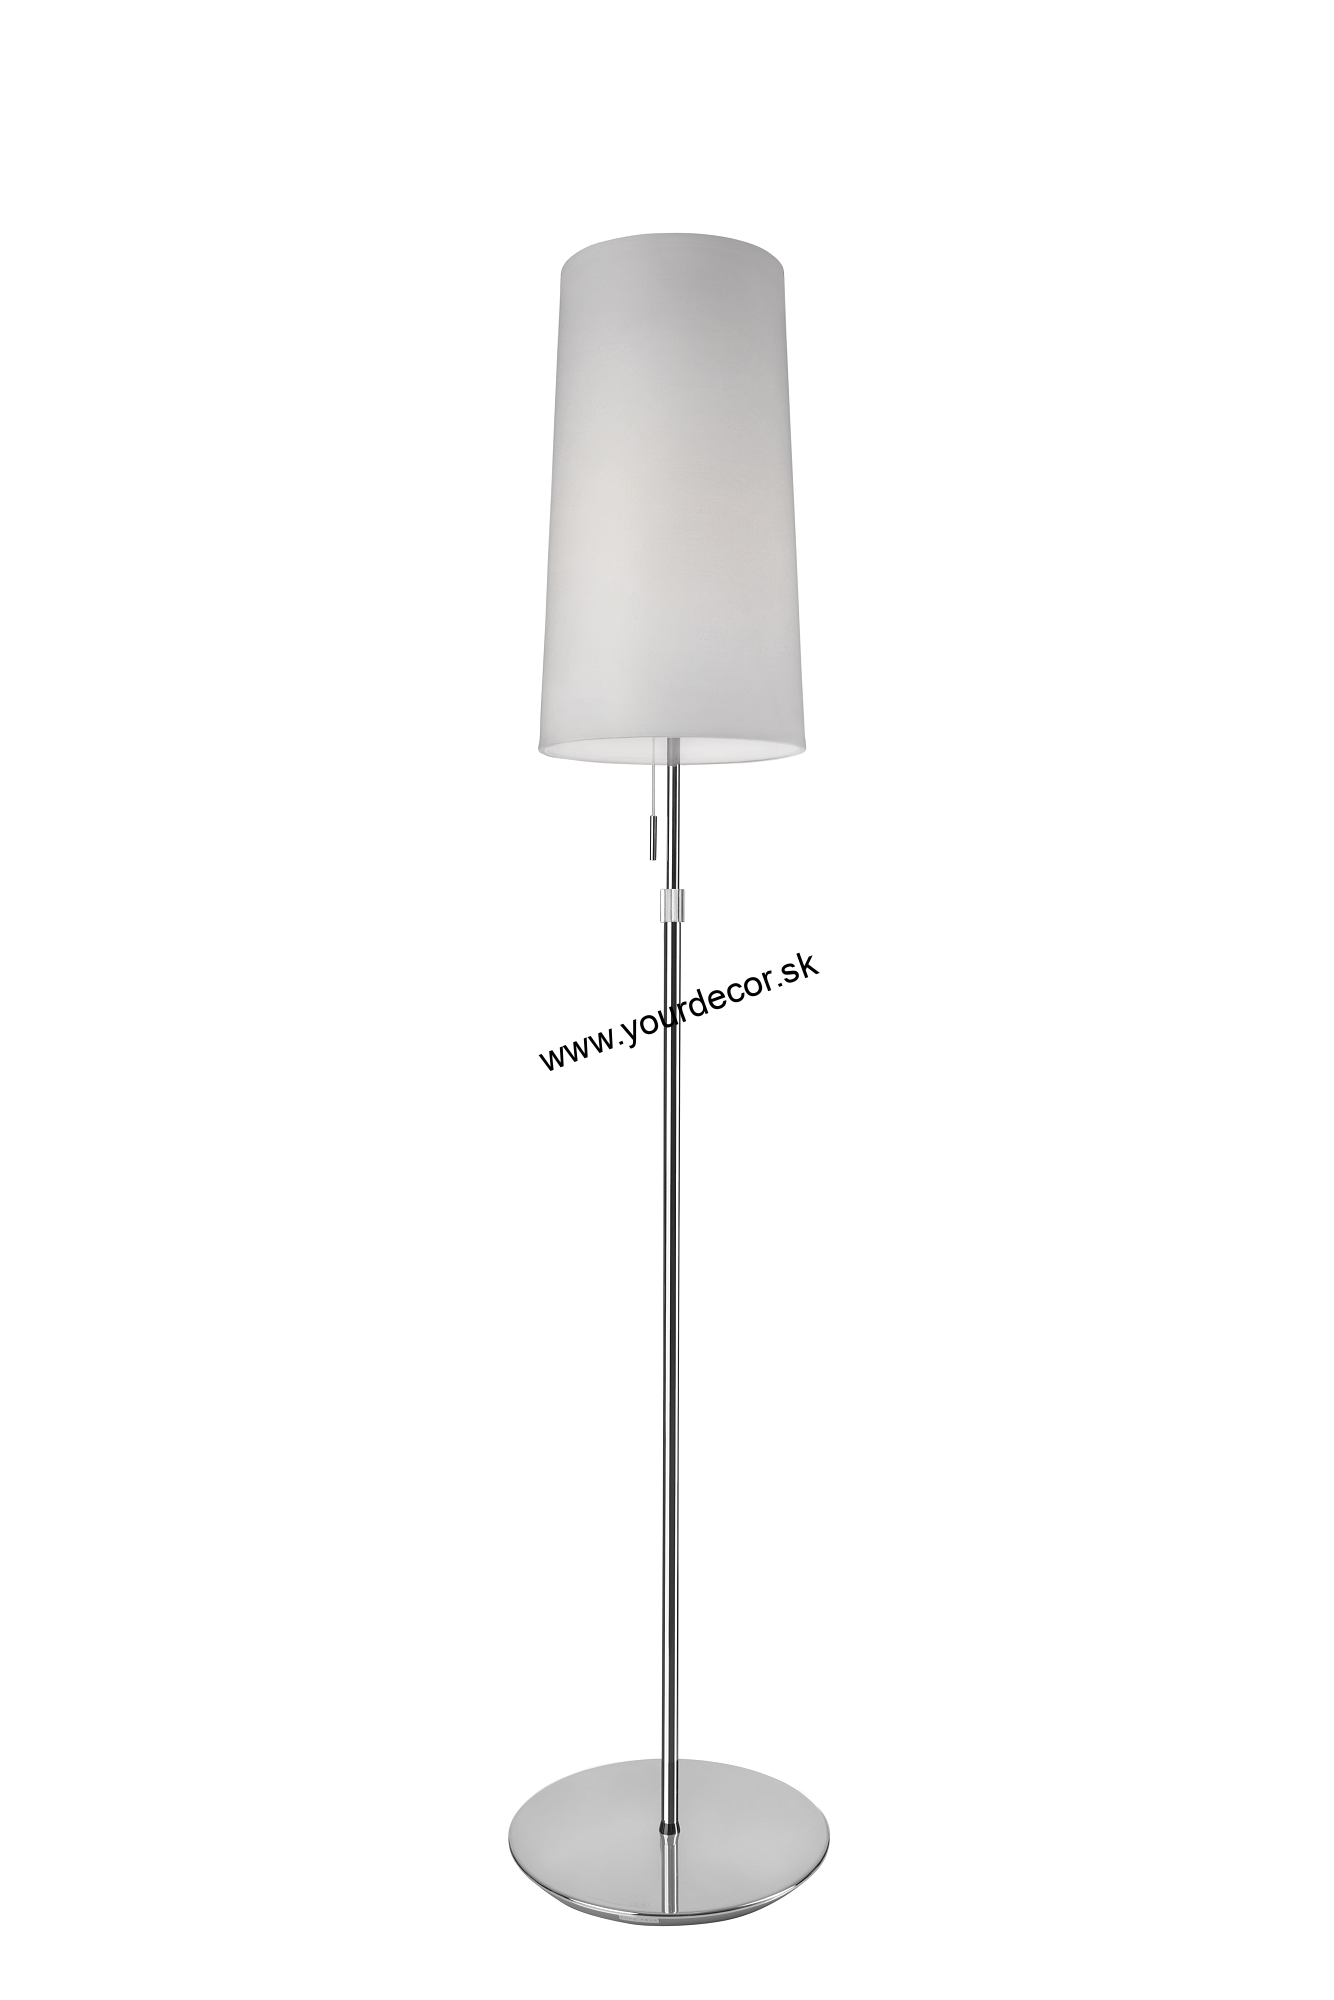 Stojatá lampa VERONA Chrom H125-164 cm